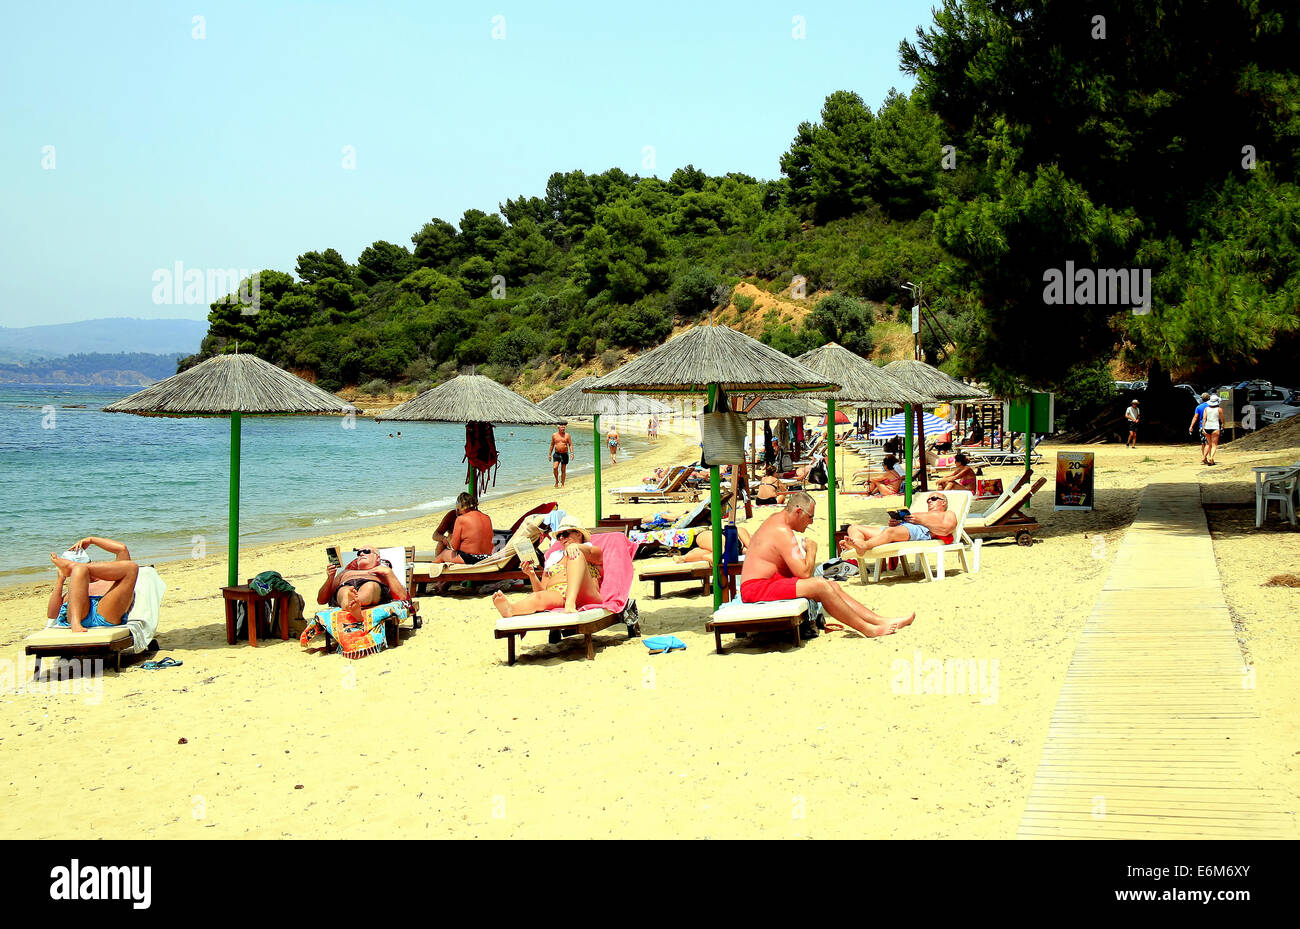 Urlauber genießen die Sonne am Strand von Agia Eleni auf der Insel Skiathos auf den griechischen Inseln, Griechenland. Stockfoto